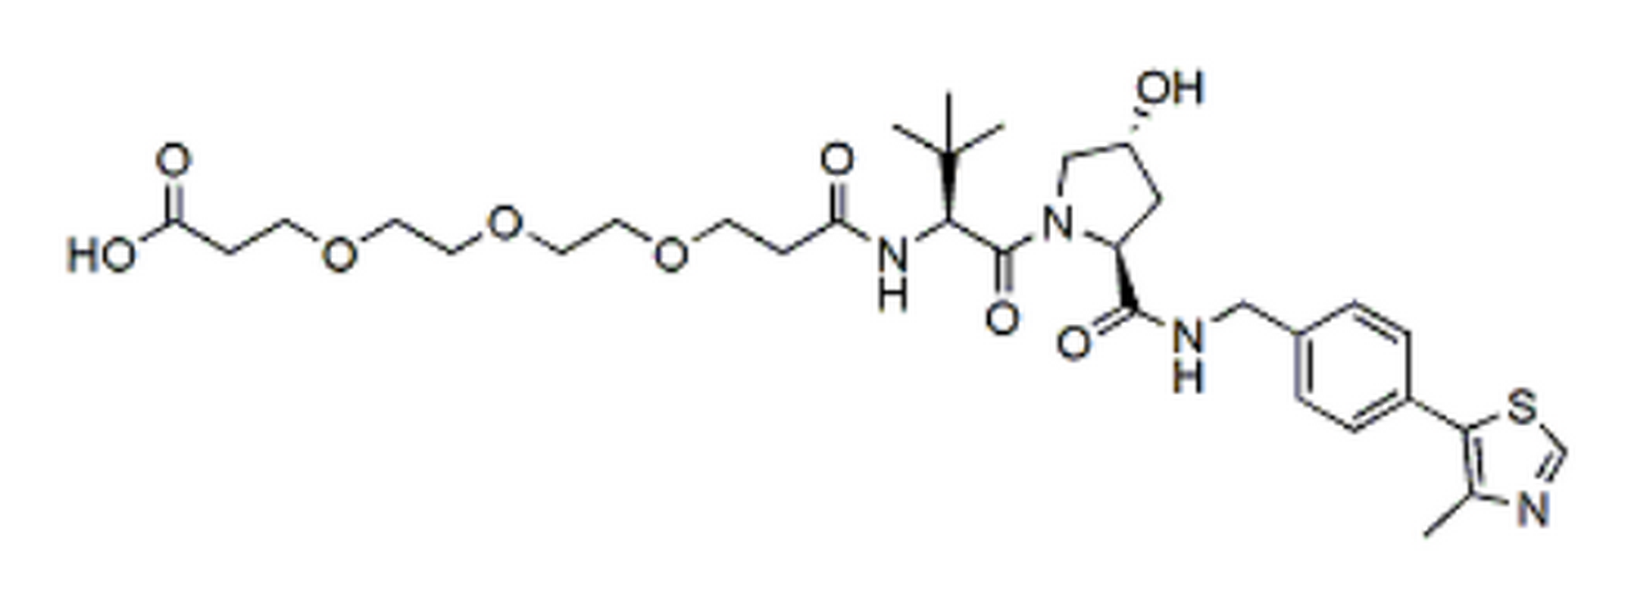 (S,R,S)-AHPC-PEG3-acid